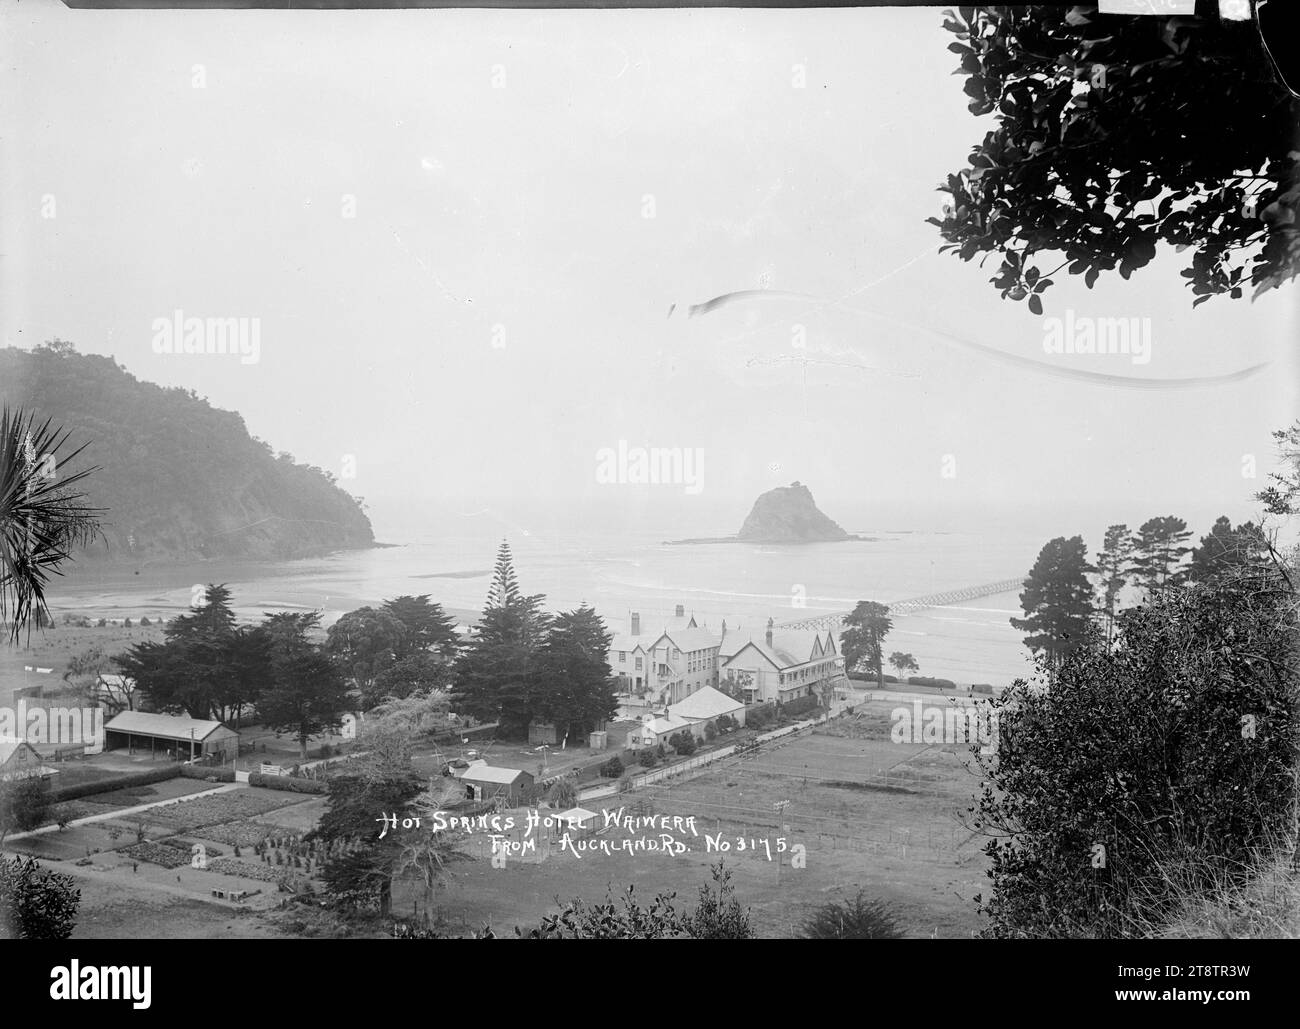 Hot Springs Hotel, Waiwera, Blick auf das Hot Springs Hotel und die Gärten in der Nähe des Strandes von Waiwera. Von der Hauptstraße von Auckland, Neuseeland (State Highway 1) aus blickten wir auf das Hotel und die Umgebung. Mahurangi Island kann vor der Küste gesehen werden, links vom Kai. Anfang der 1900er Jahre Stockfoto